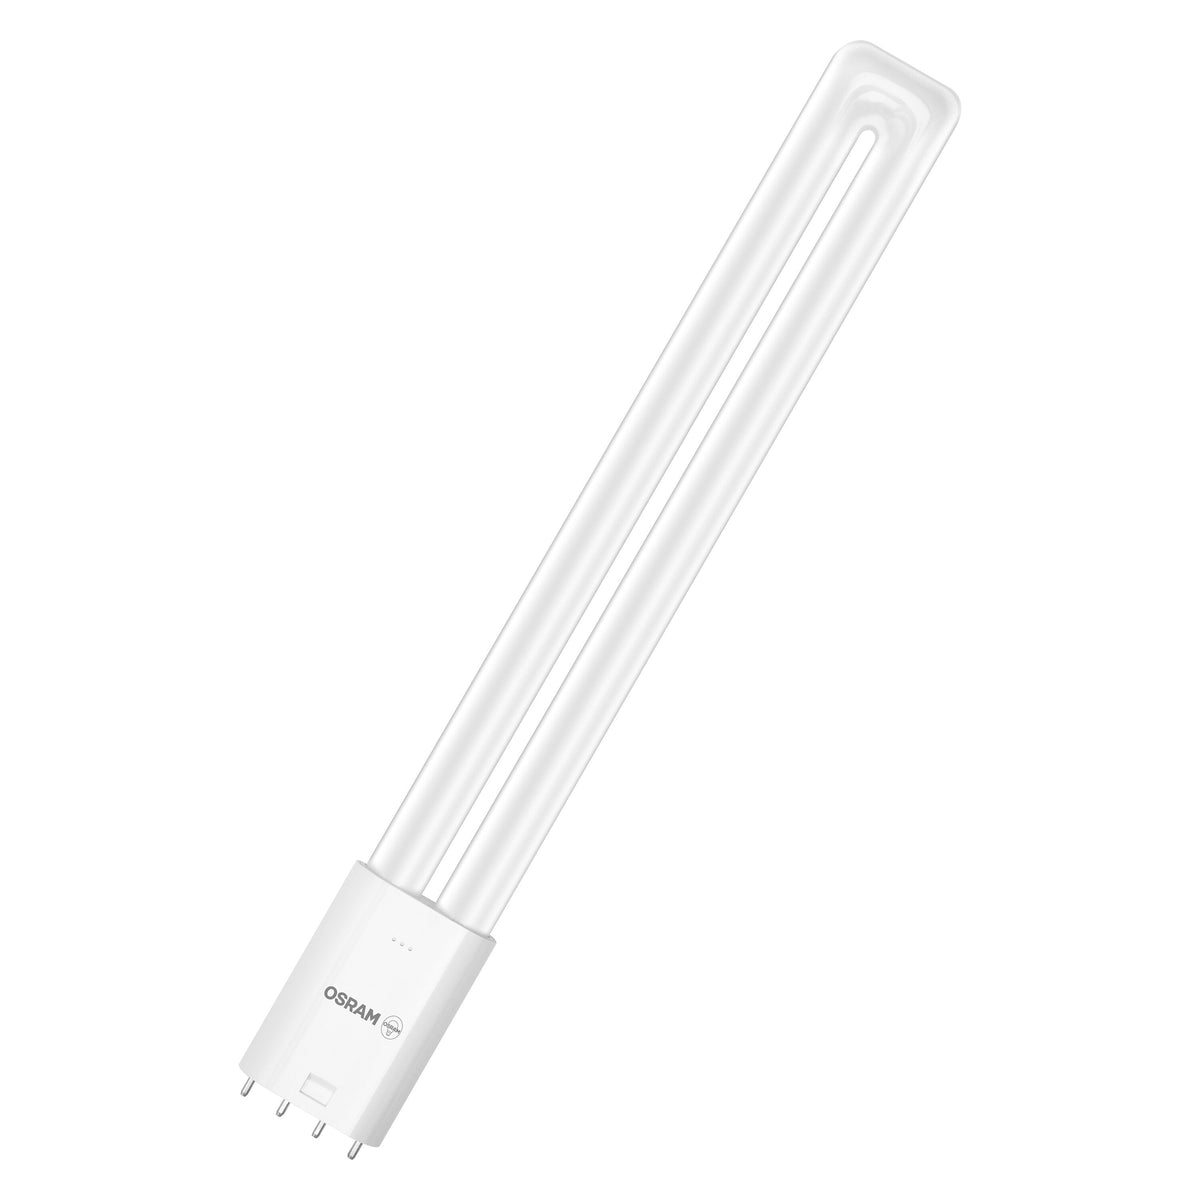 LED OSRAM Dulux per attacco 2G11, aspetto opaco, bianco freddo (4000K), 1500 lumen, ricambio per lampadine convenzionali da 24 W, non dimmerabile, confezione da 1